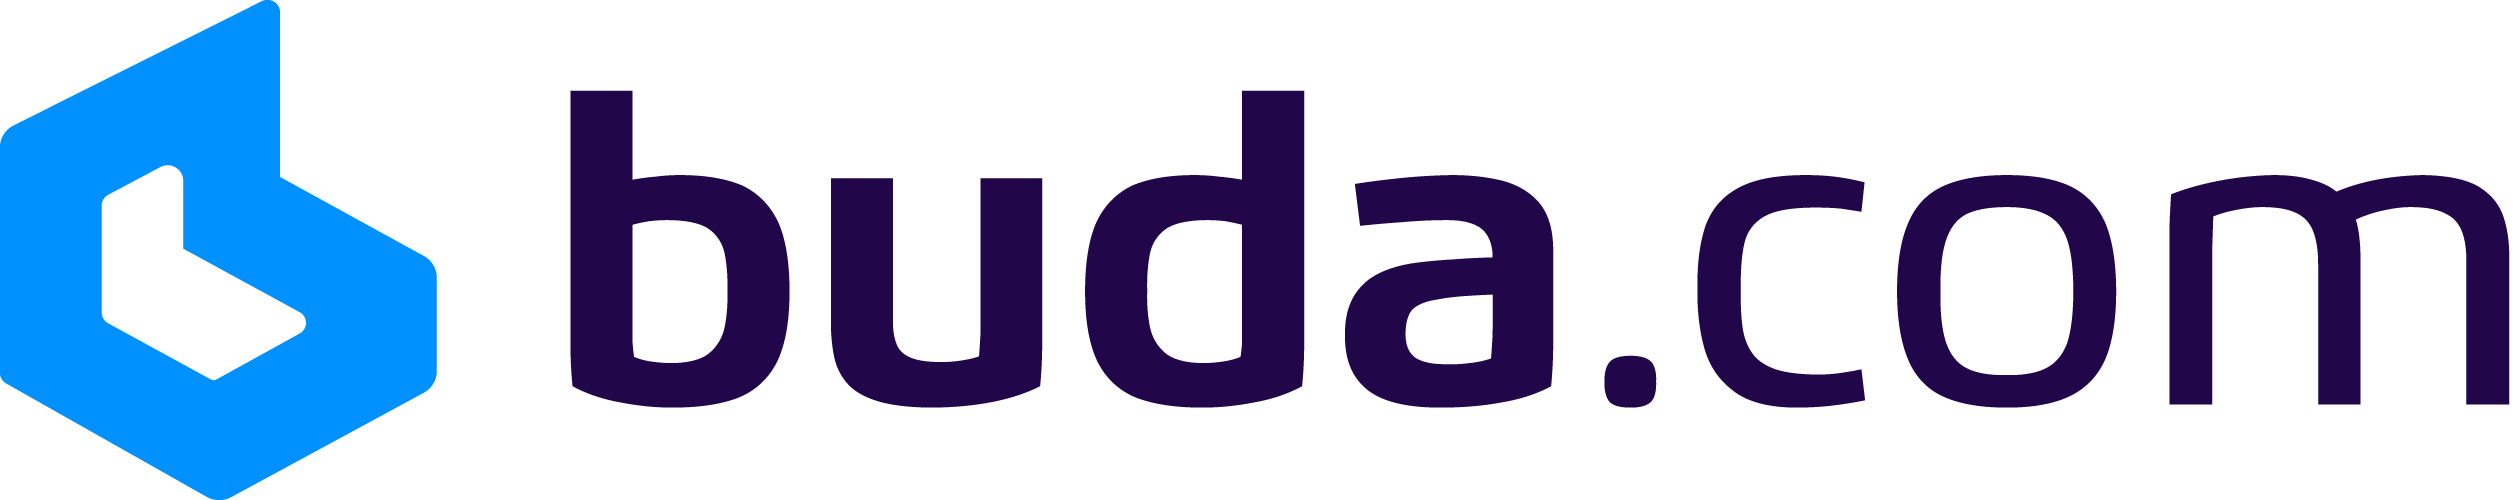 Buda logo.png